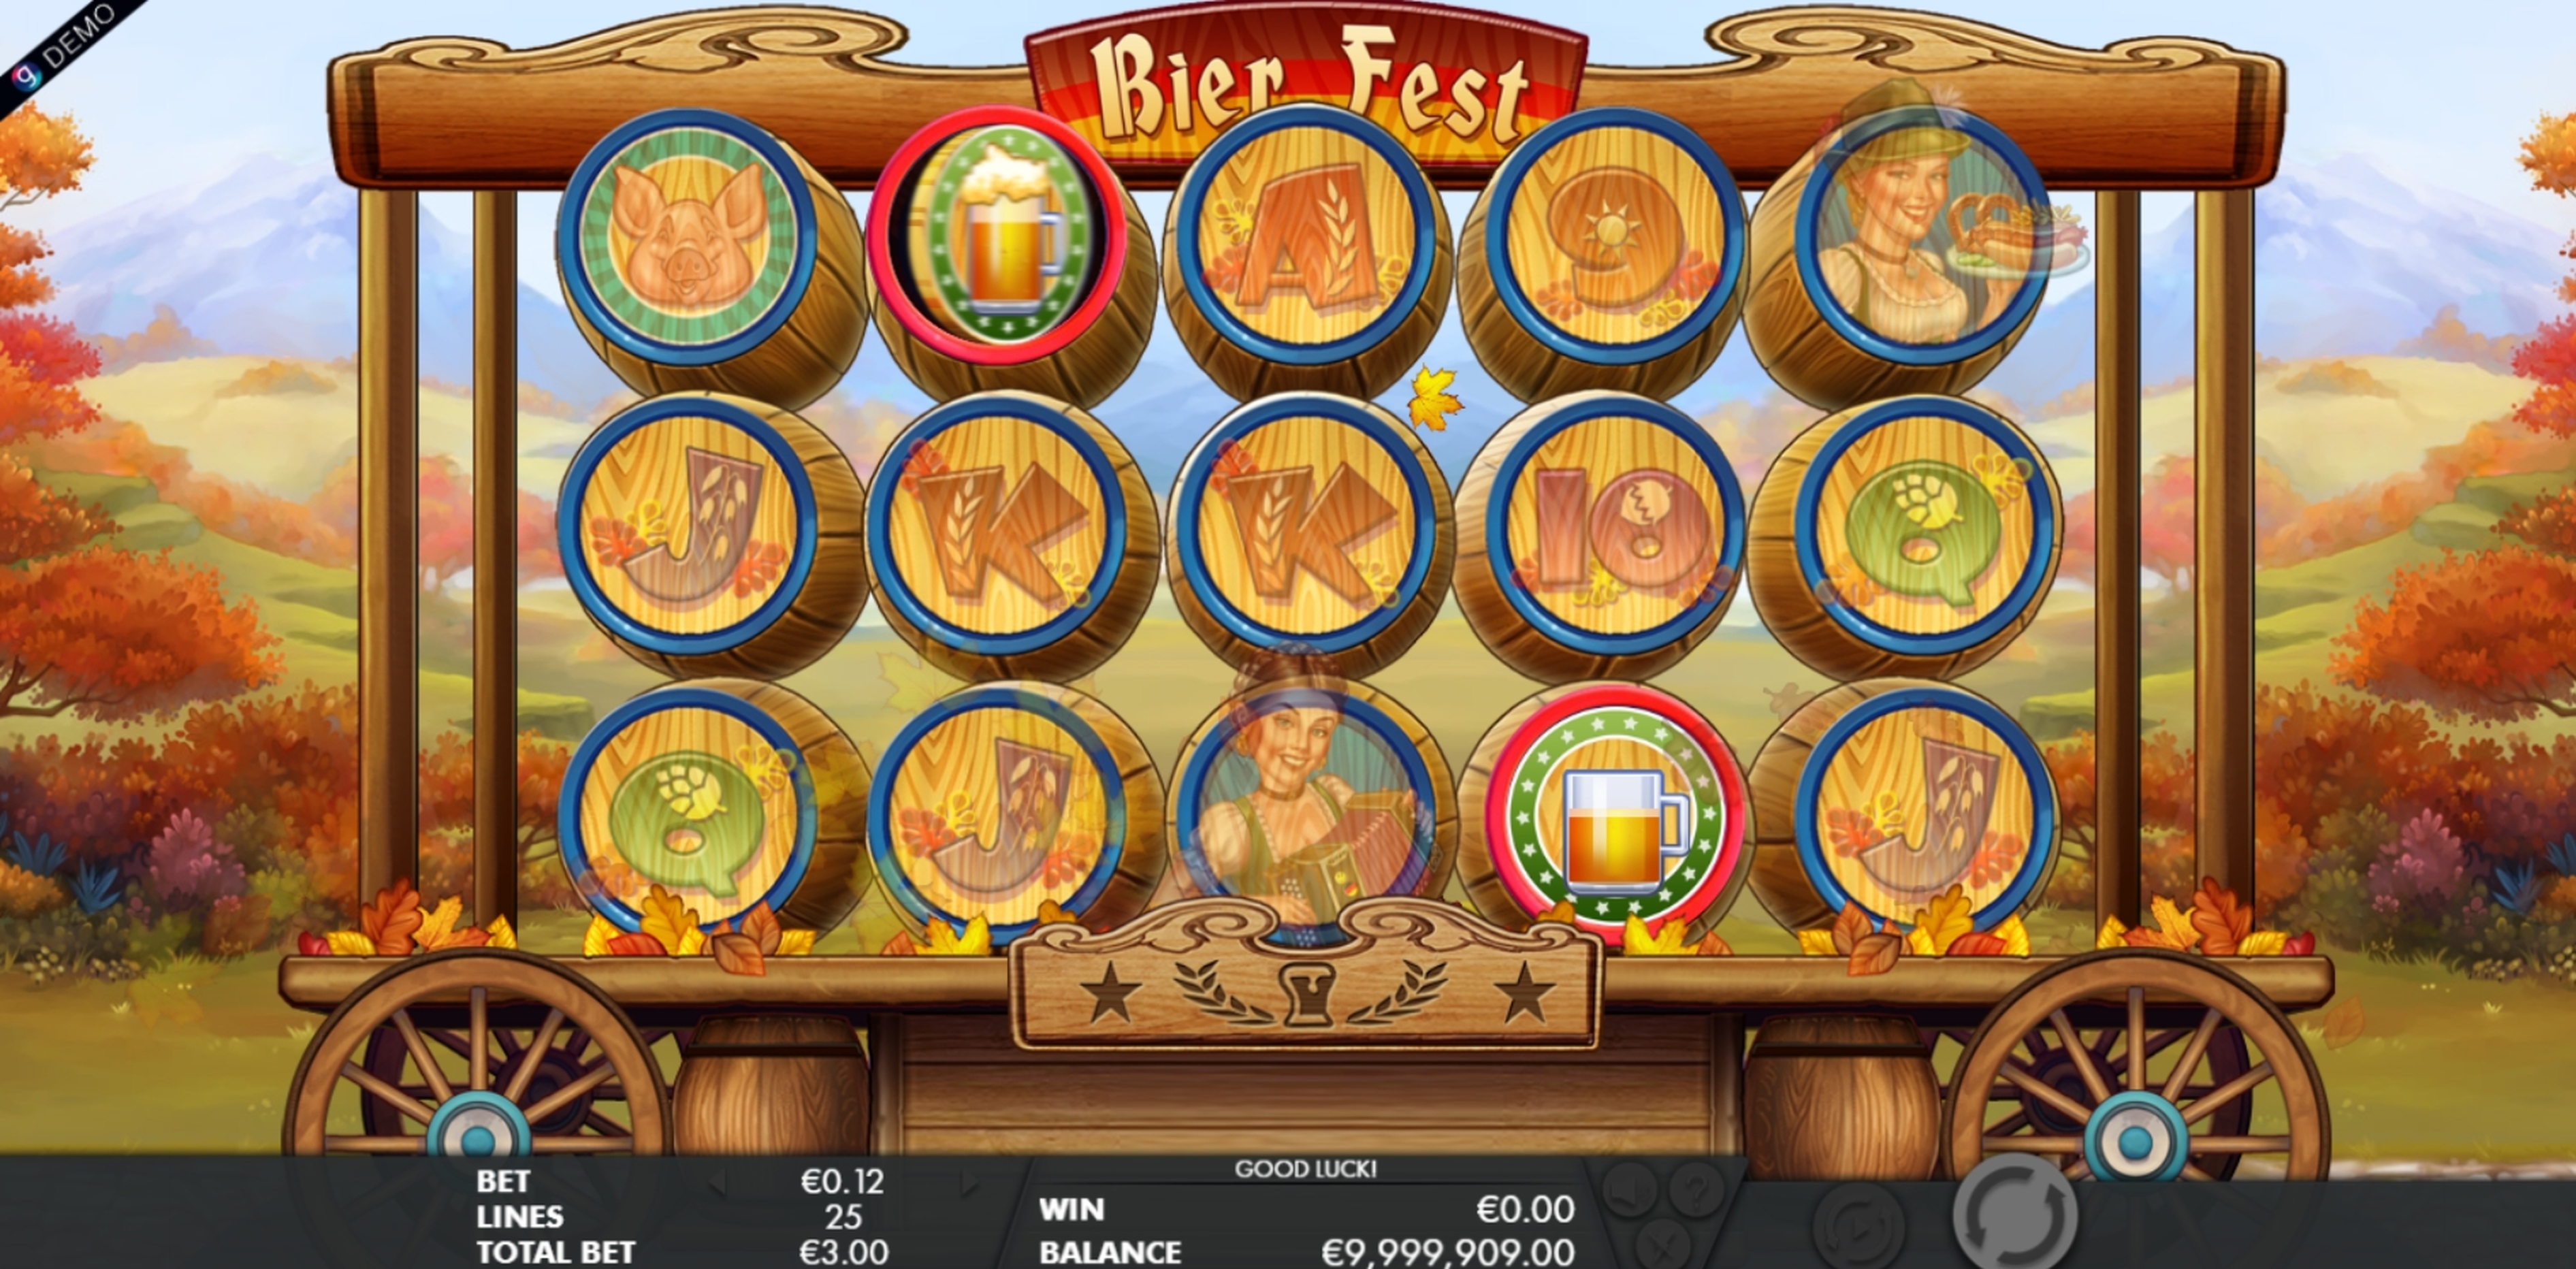 Win Money in Bier Fest Free Slot Game by Genesis Gaming